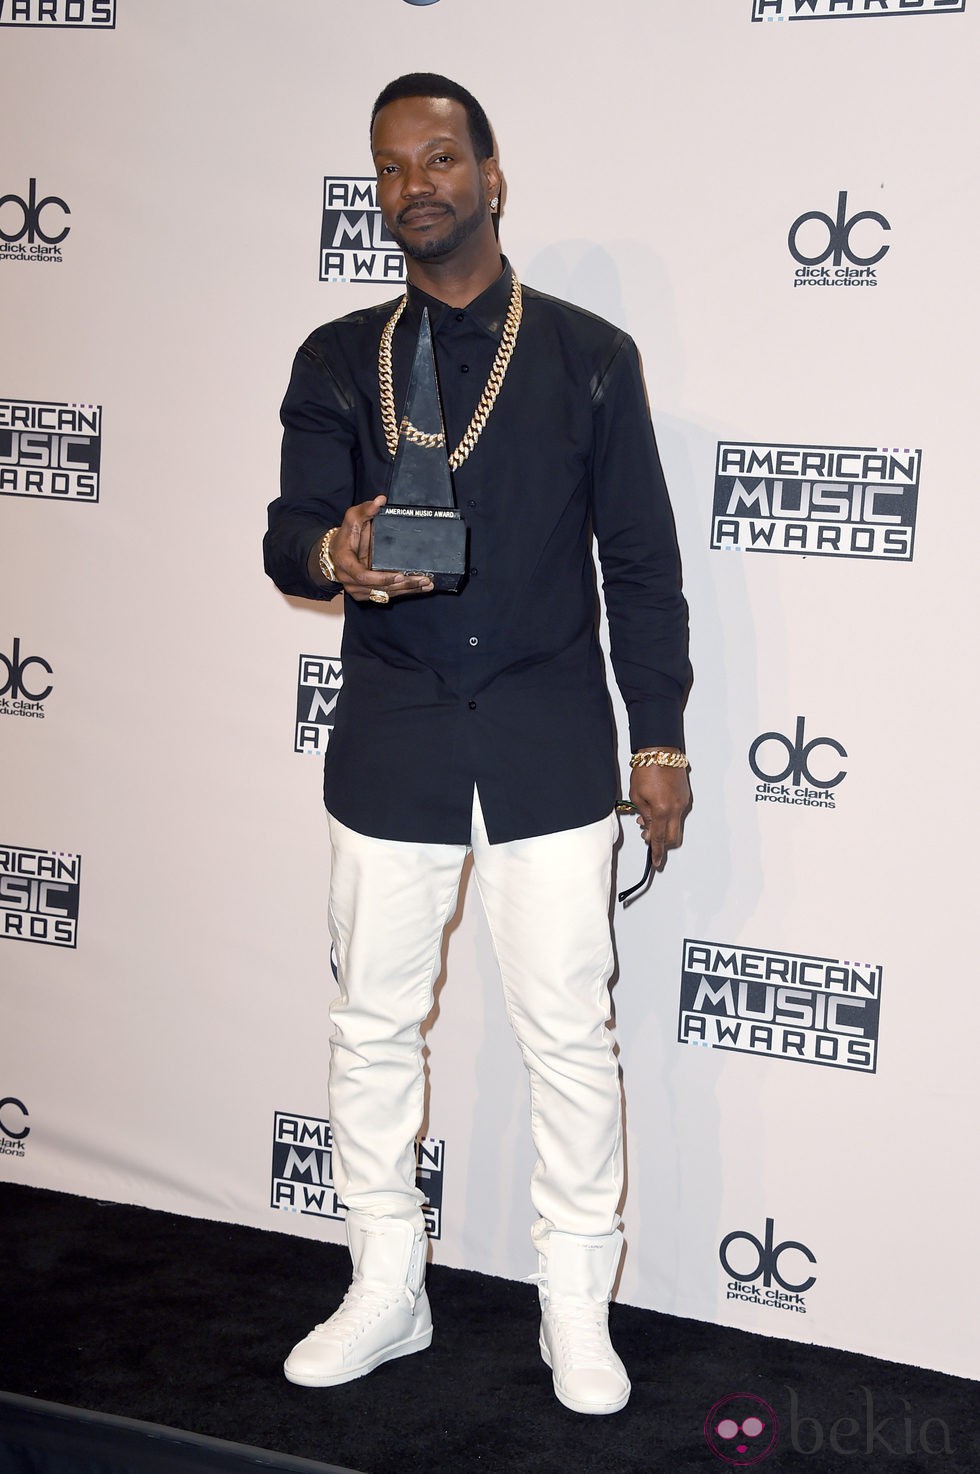 Juicy J con su galardón de los American Music Awards 2014